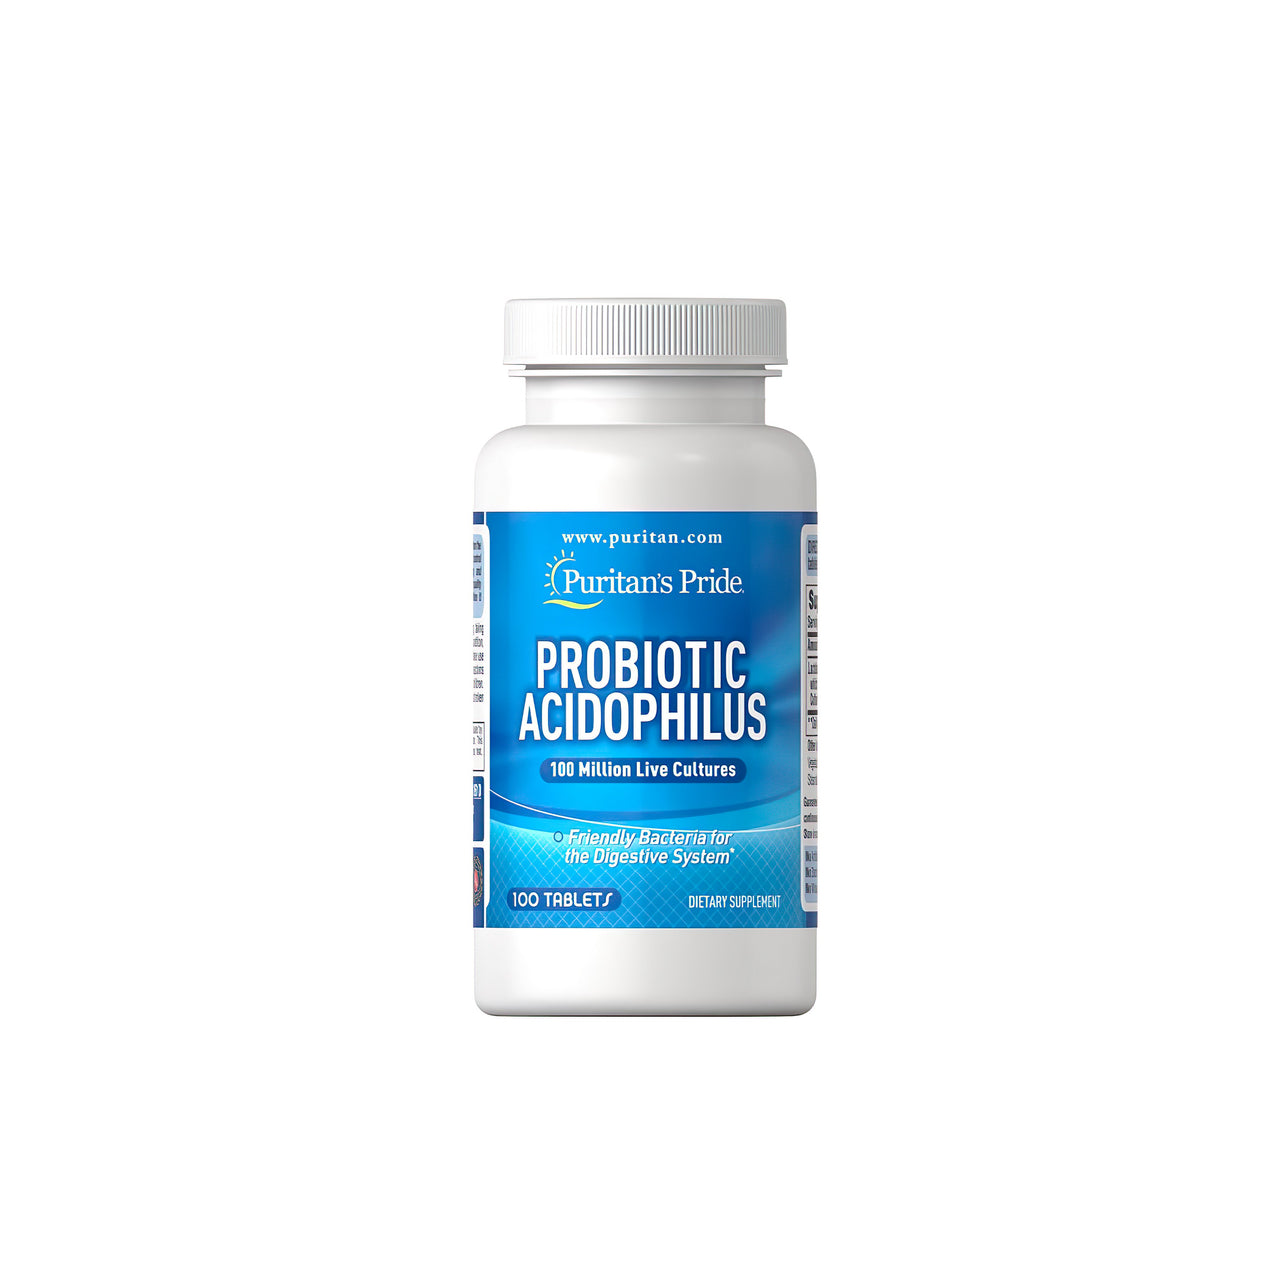 Eine Flasche Probiotic Acidophilus 100 Tabletten von Puritan's Pride, die Probiotika für Verdauung und Immunsystem enthalten.